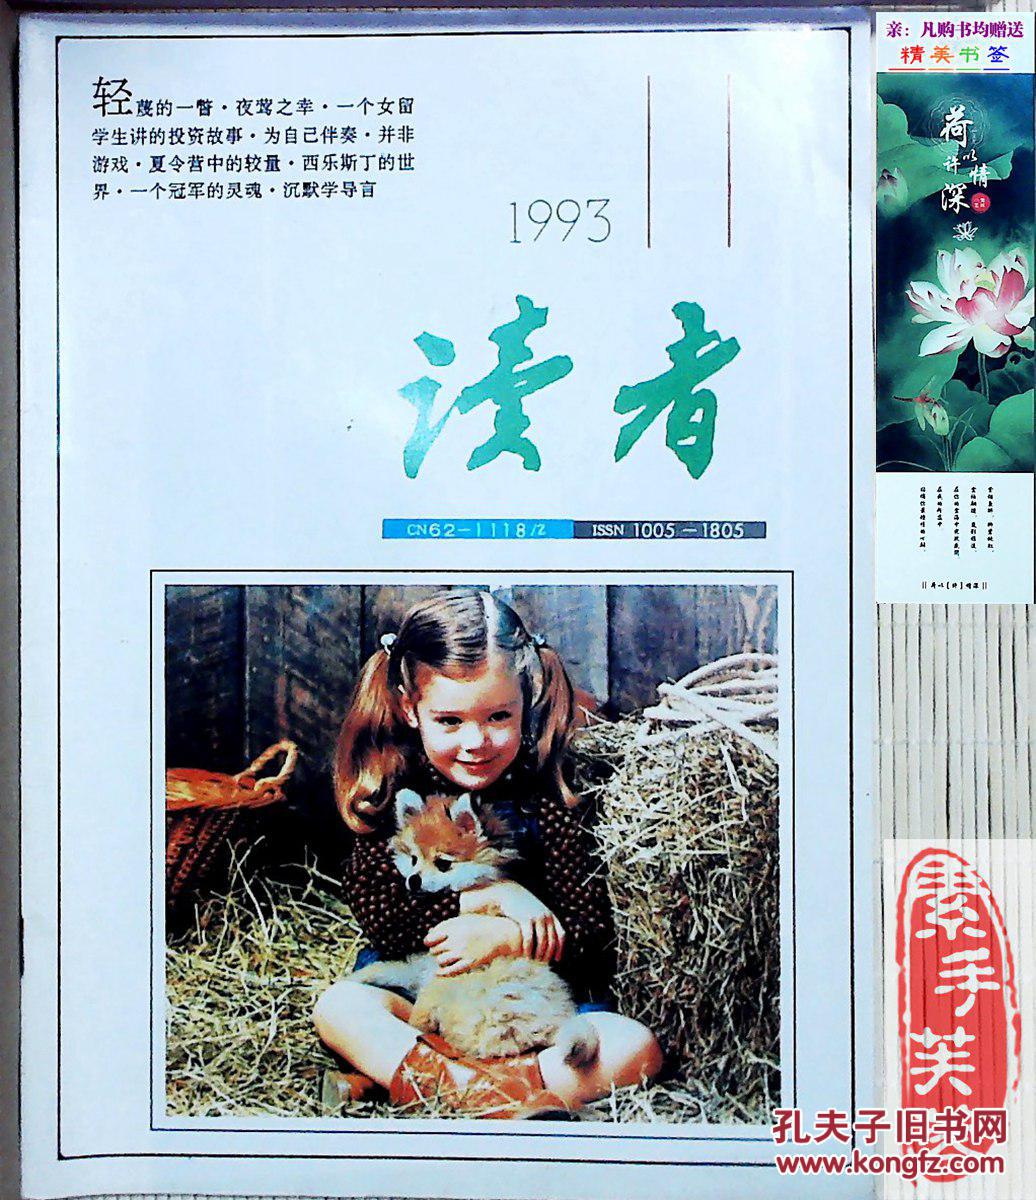 【图】《读者》杂志,1993年第11期--中国期刊